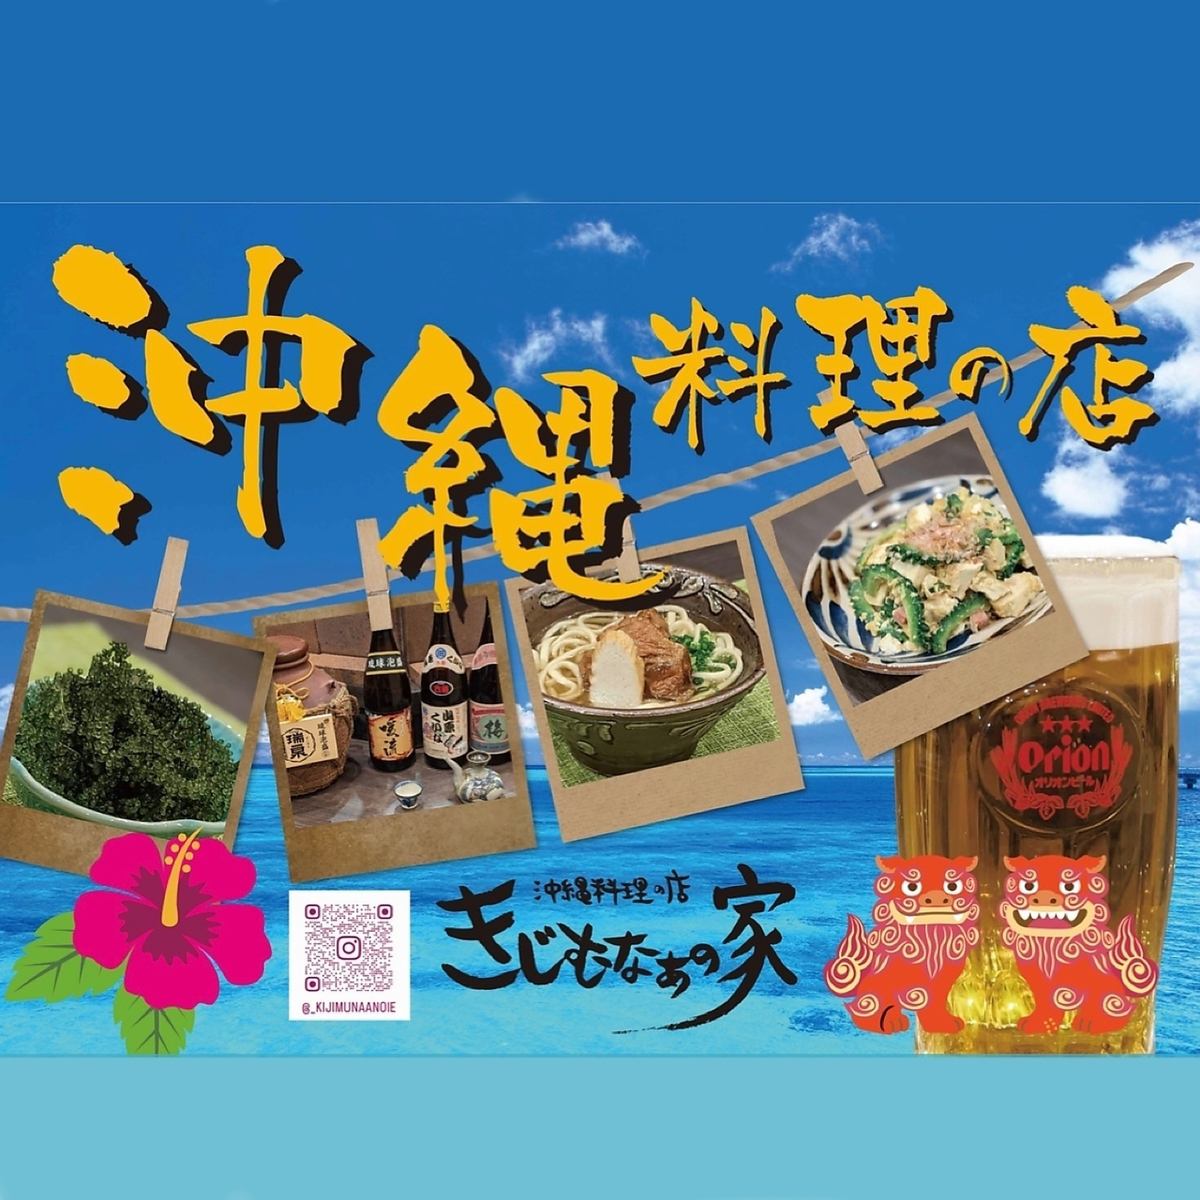 从京成千叶站步行2分钟！可以享用冲绳美食！恭候您的预约♪